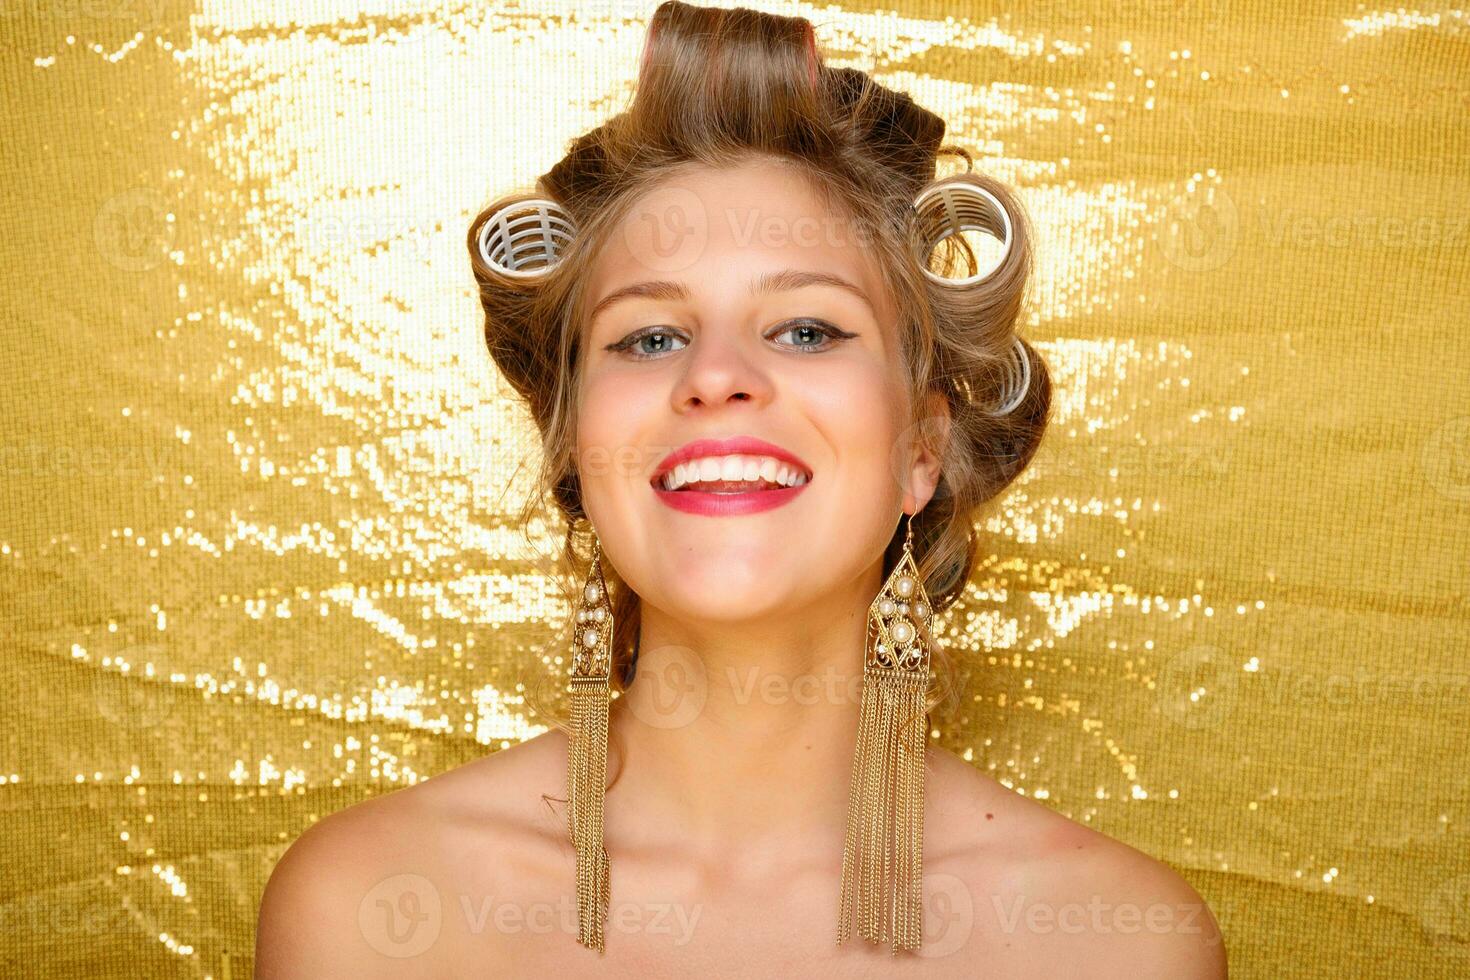 lindo menina dentro cabelo bobes isolado em ouro foto